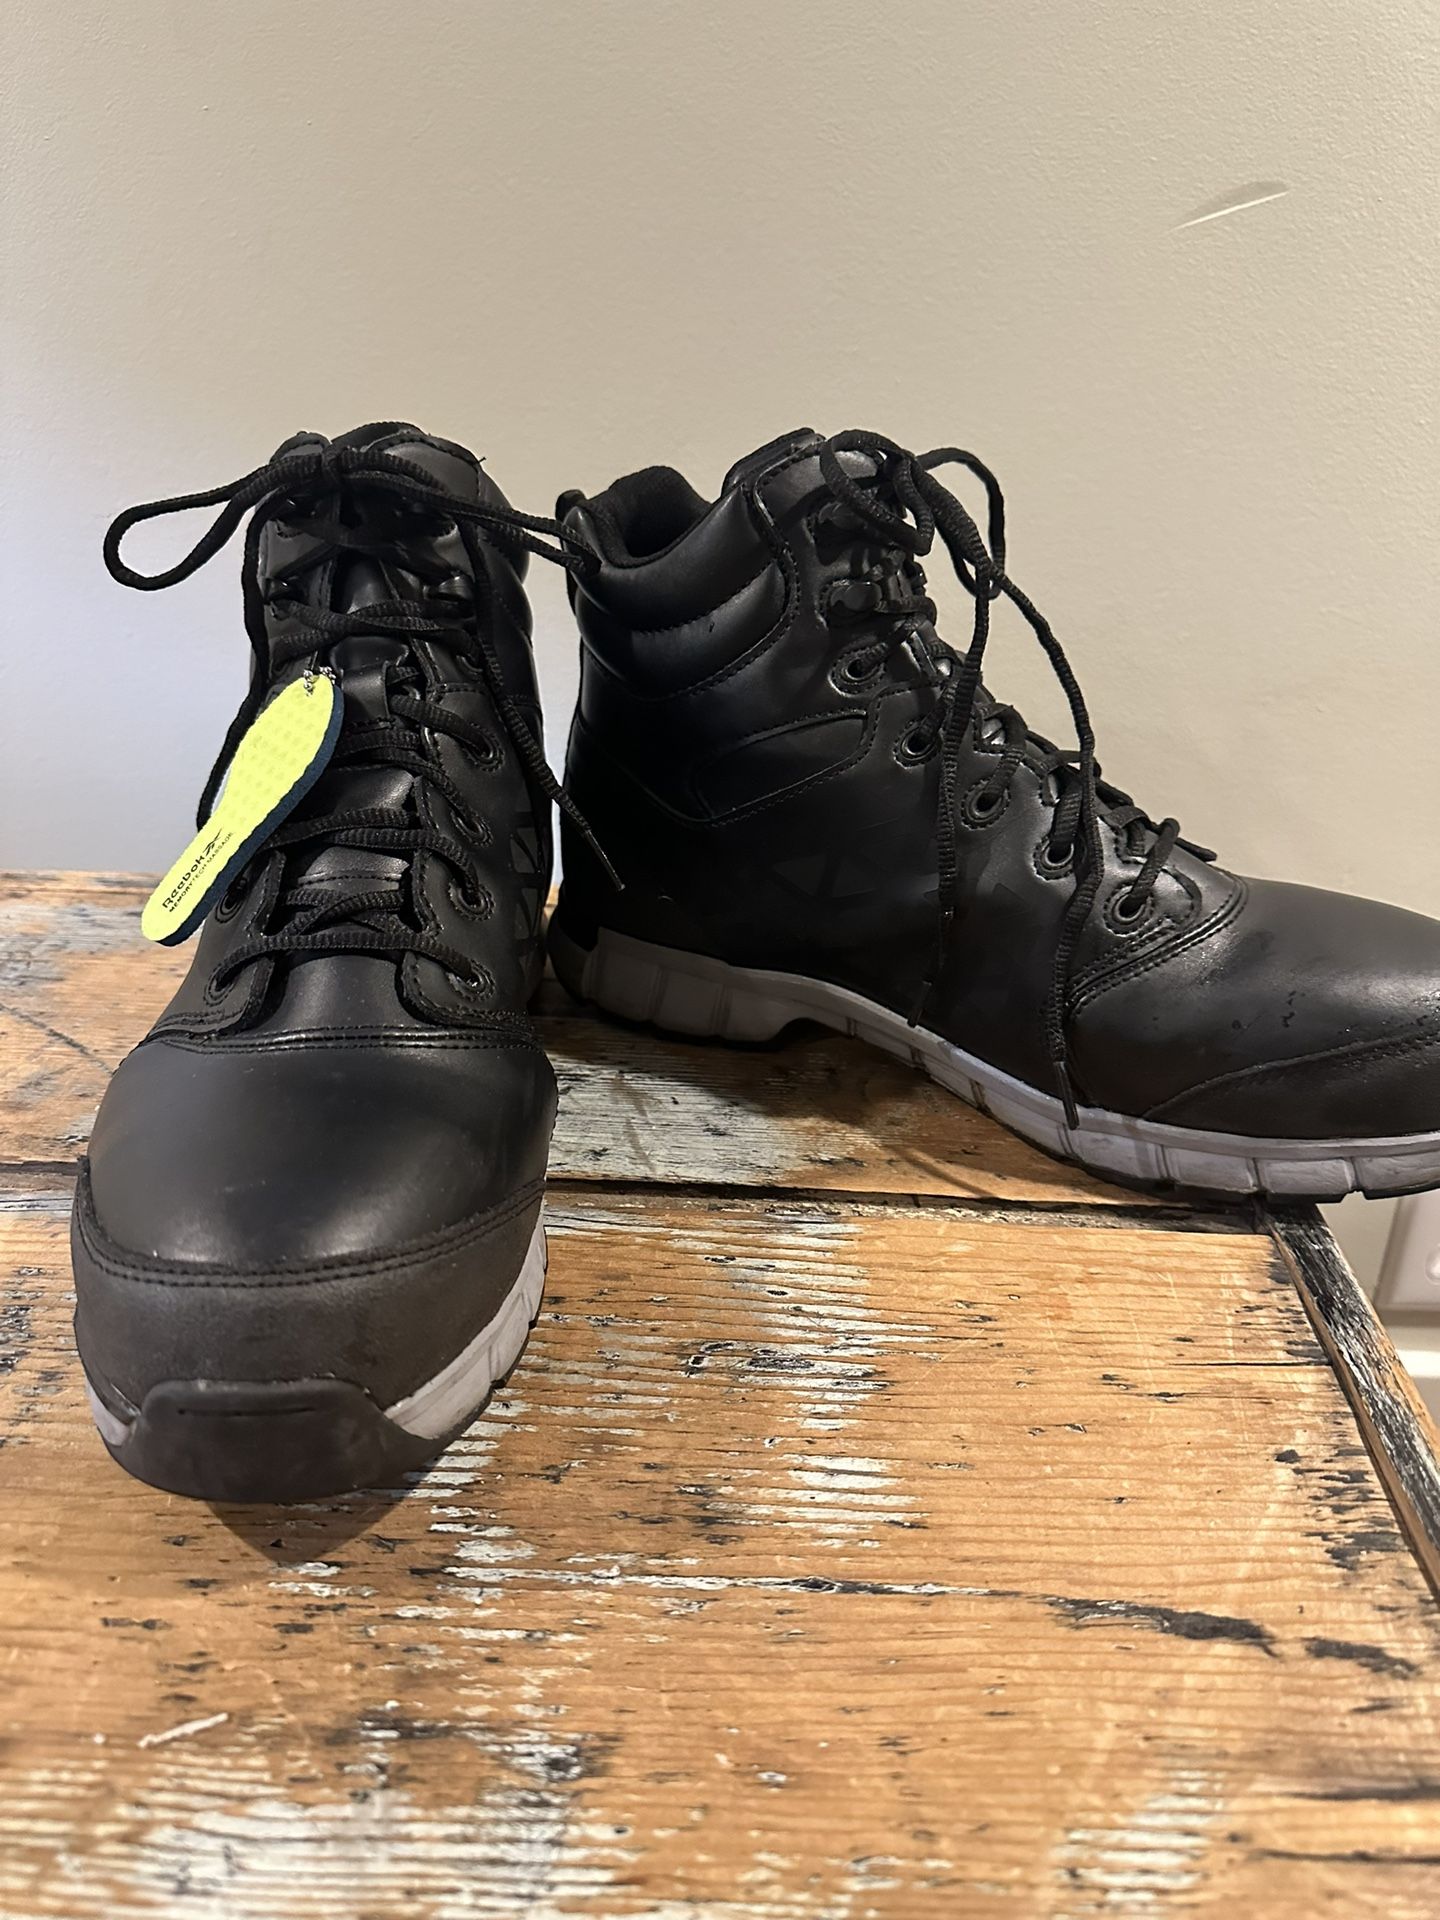 Reebok Leather Steel Toe Boots 